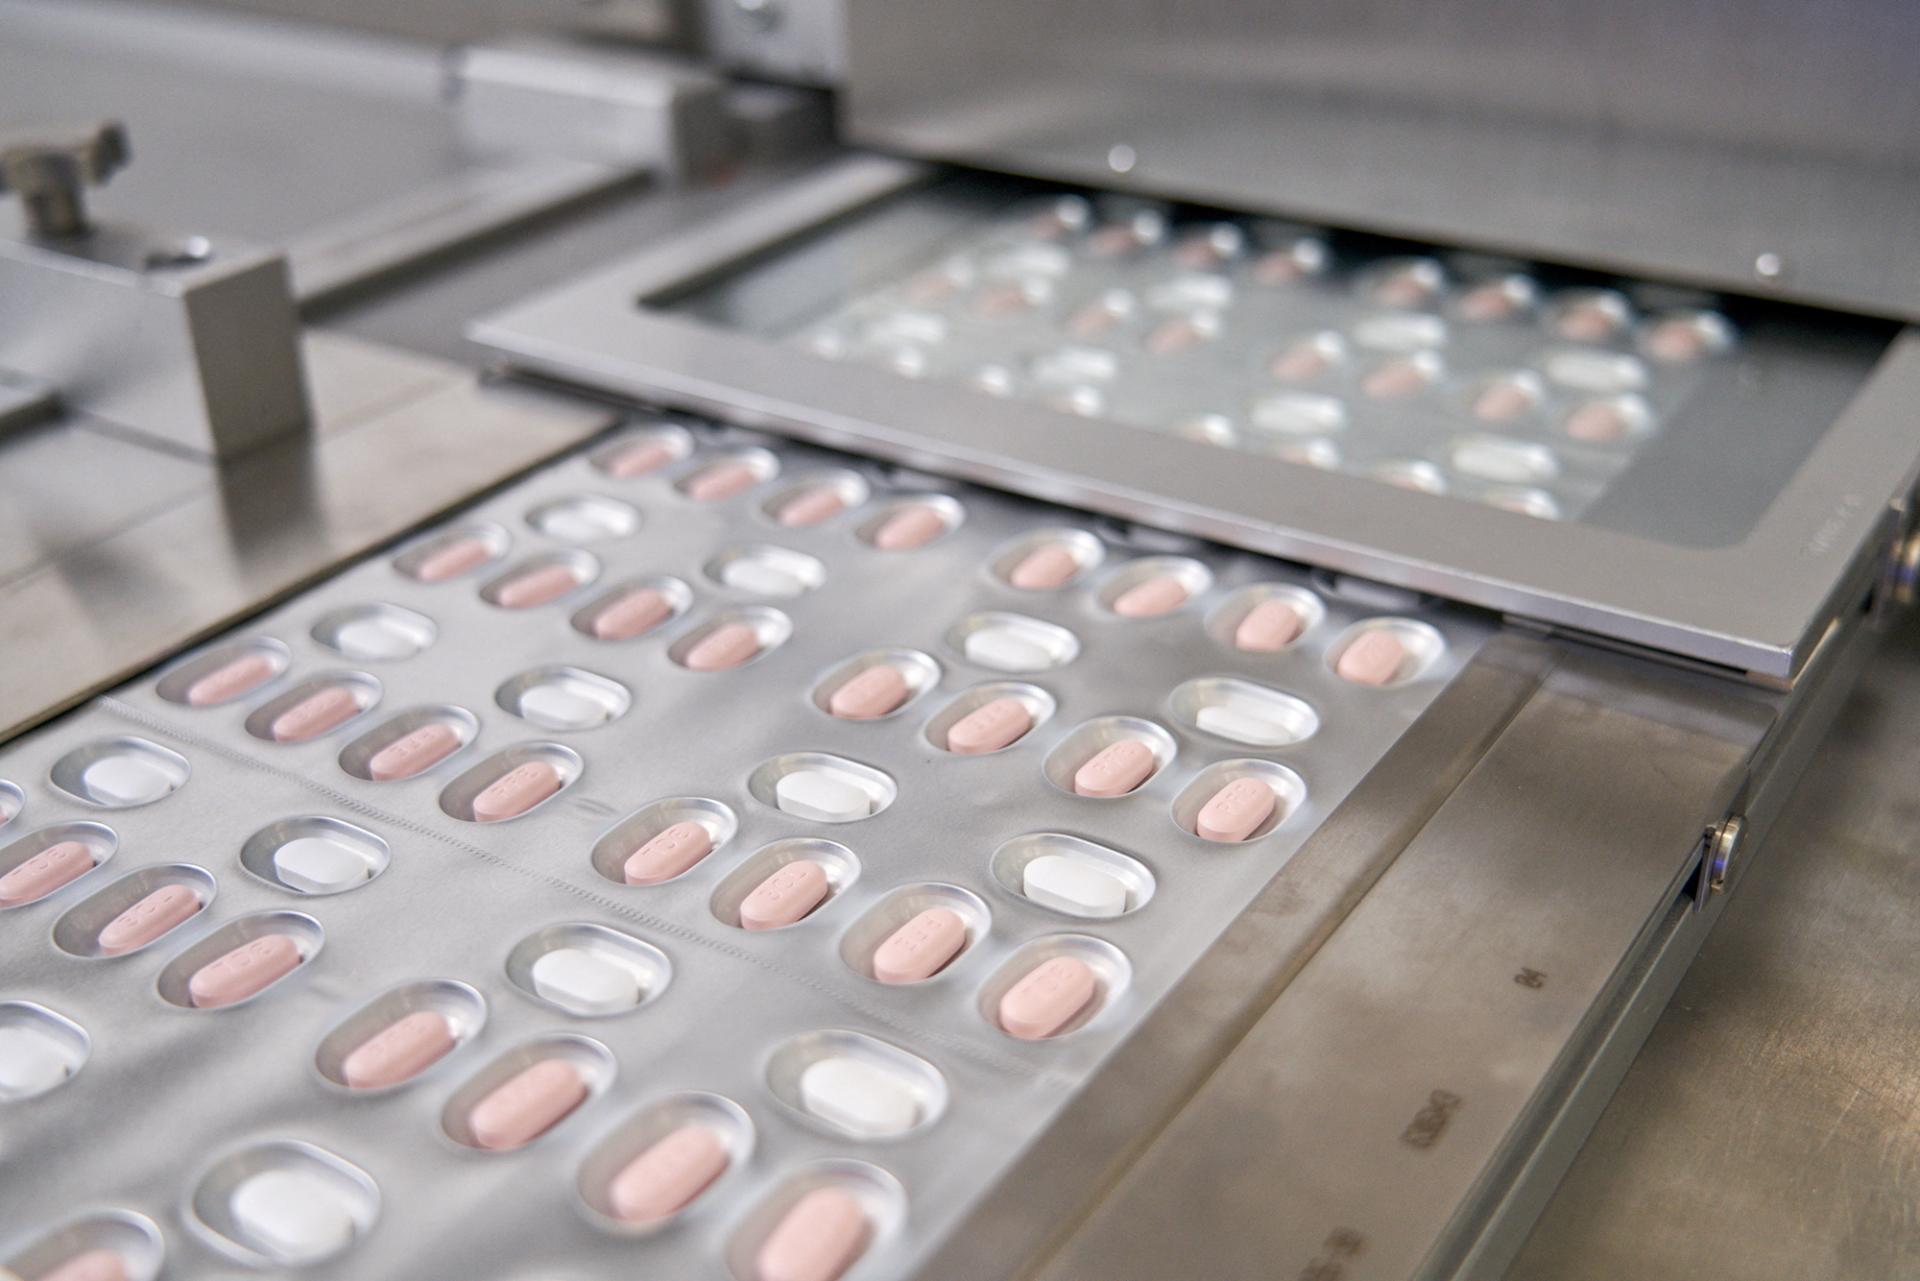 Sud Corea ha annunciato di aver comprato i farmaci anti Covid-19 oprodotto d a Pfizer.